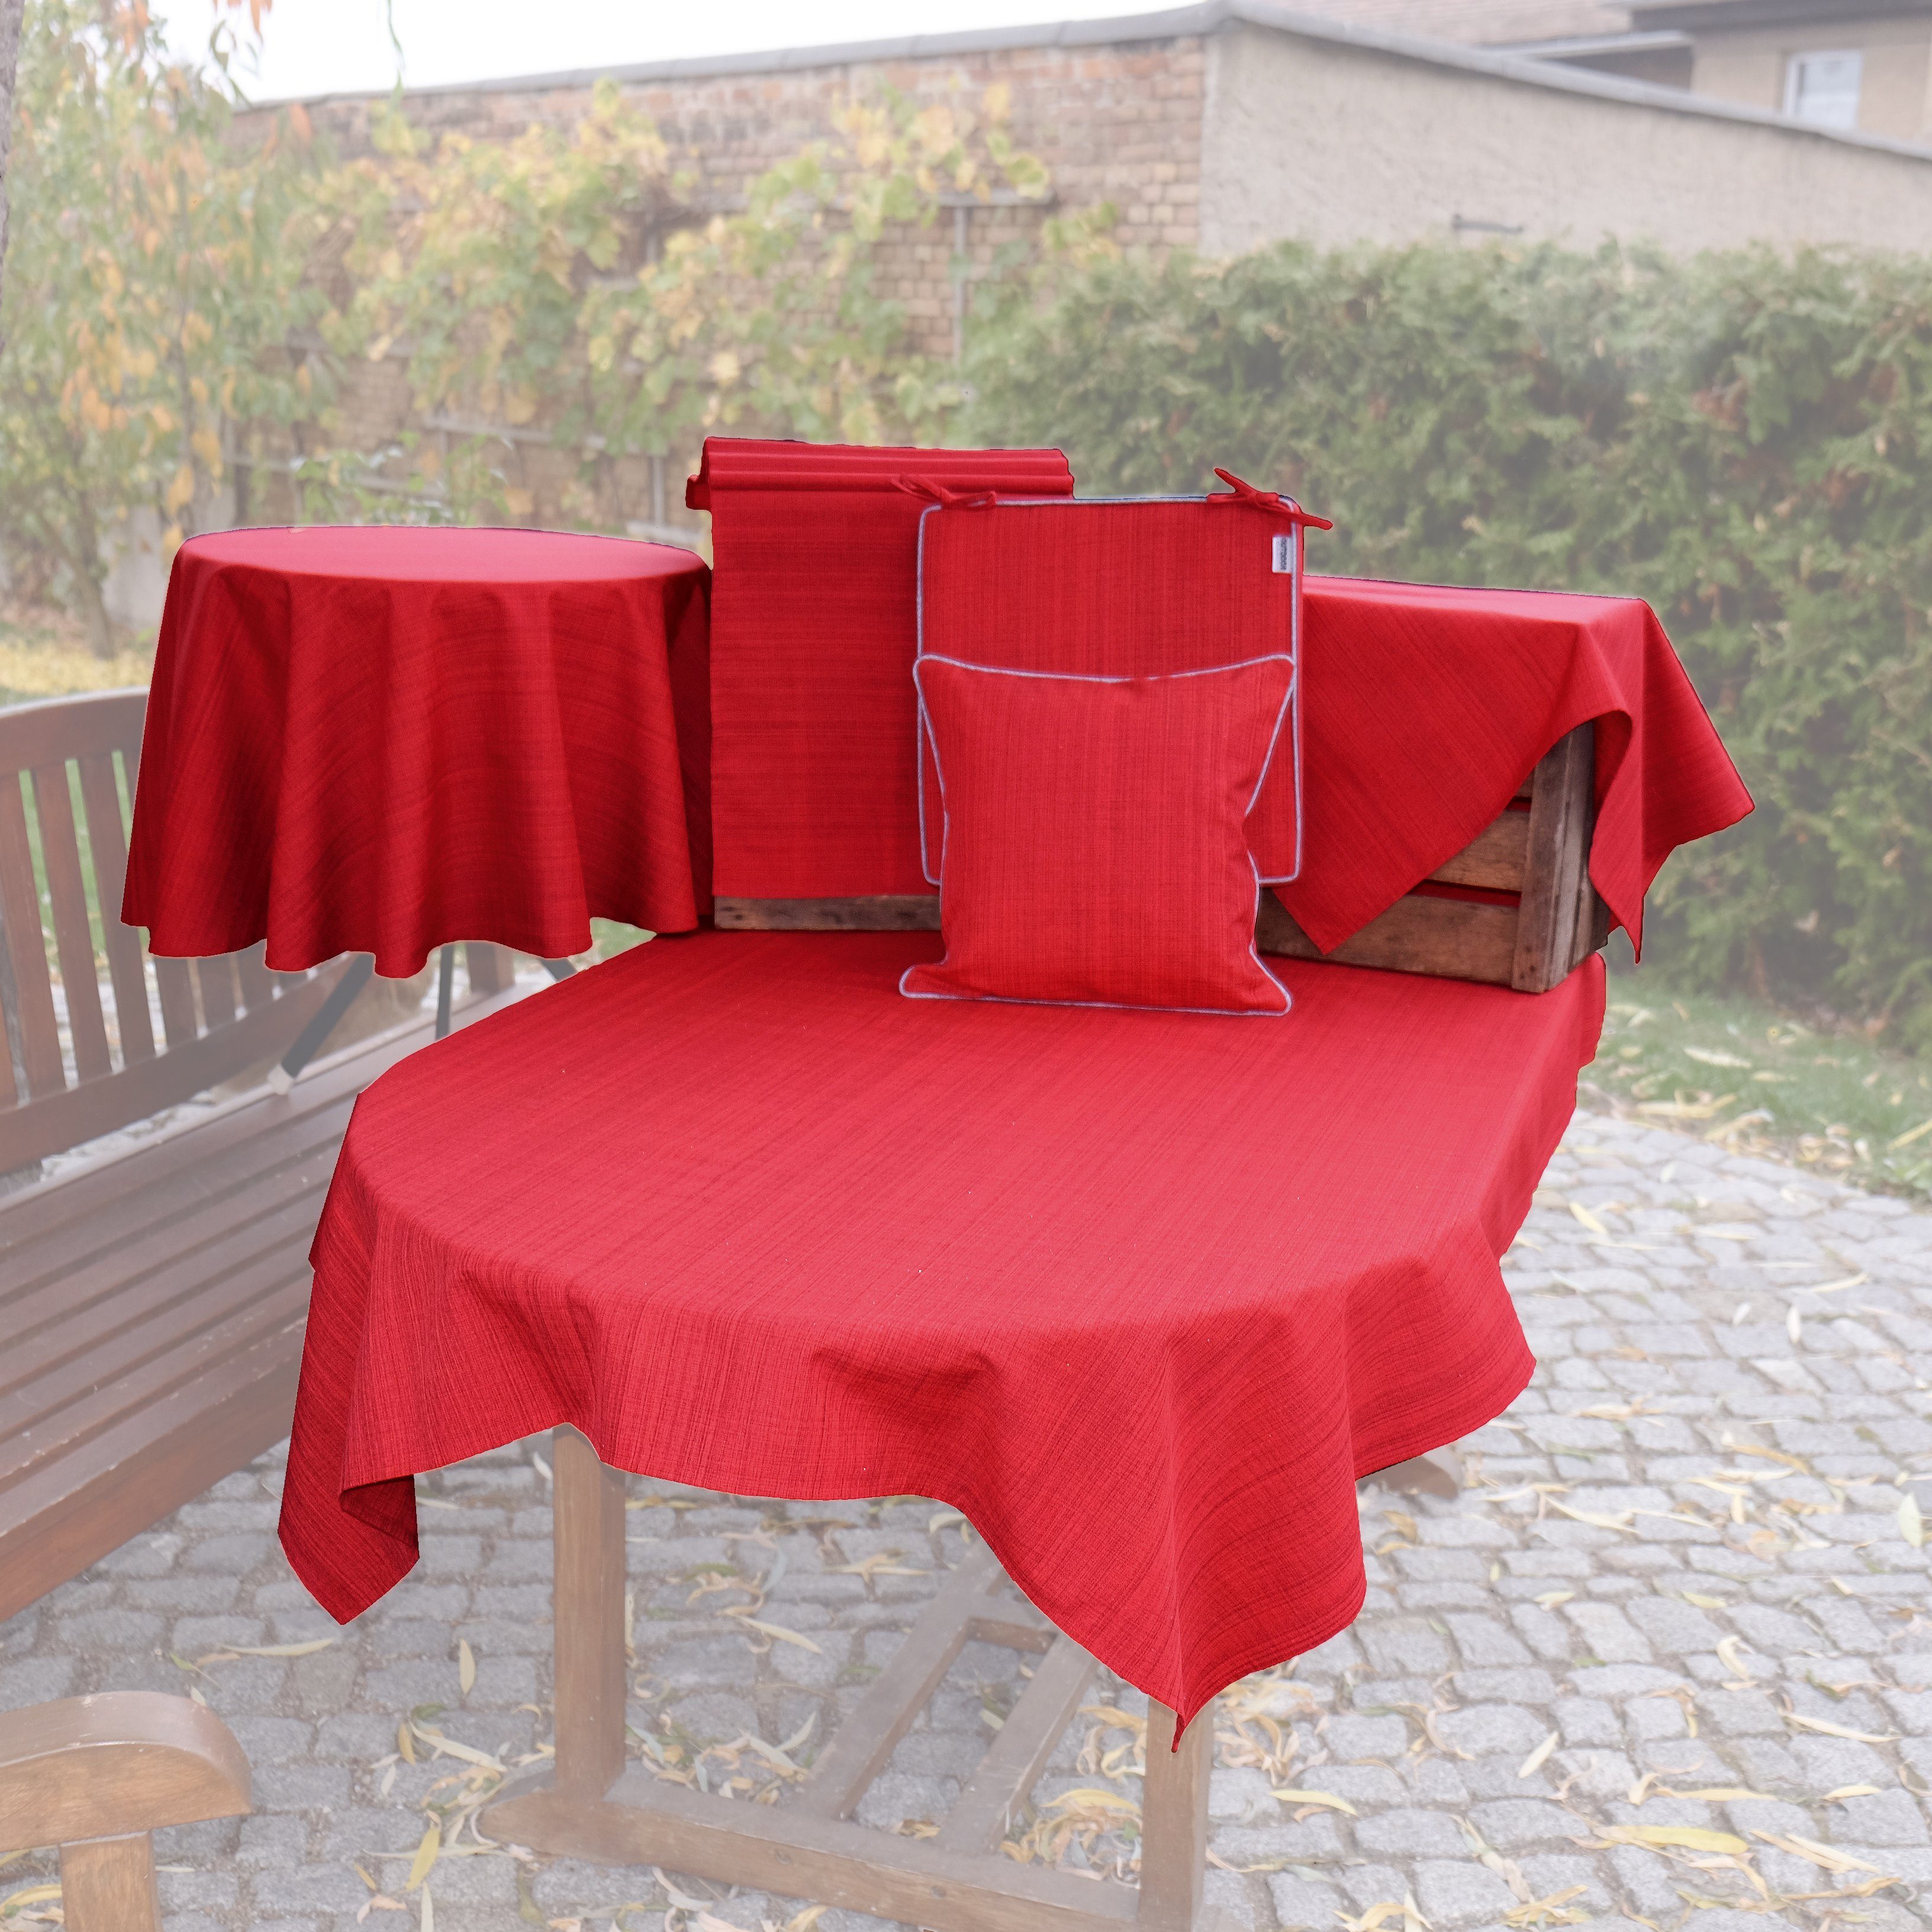 wetterbeständig Draussen Drinnen, Tischwäsche rot meliert und TextilDepot24 für Gartentischdecke Outdoor